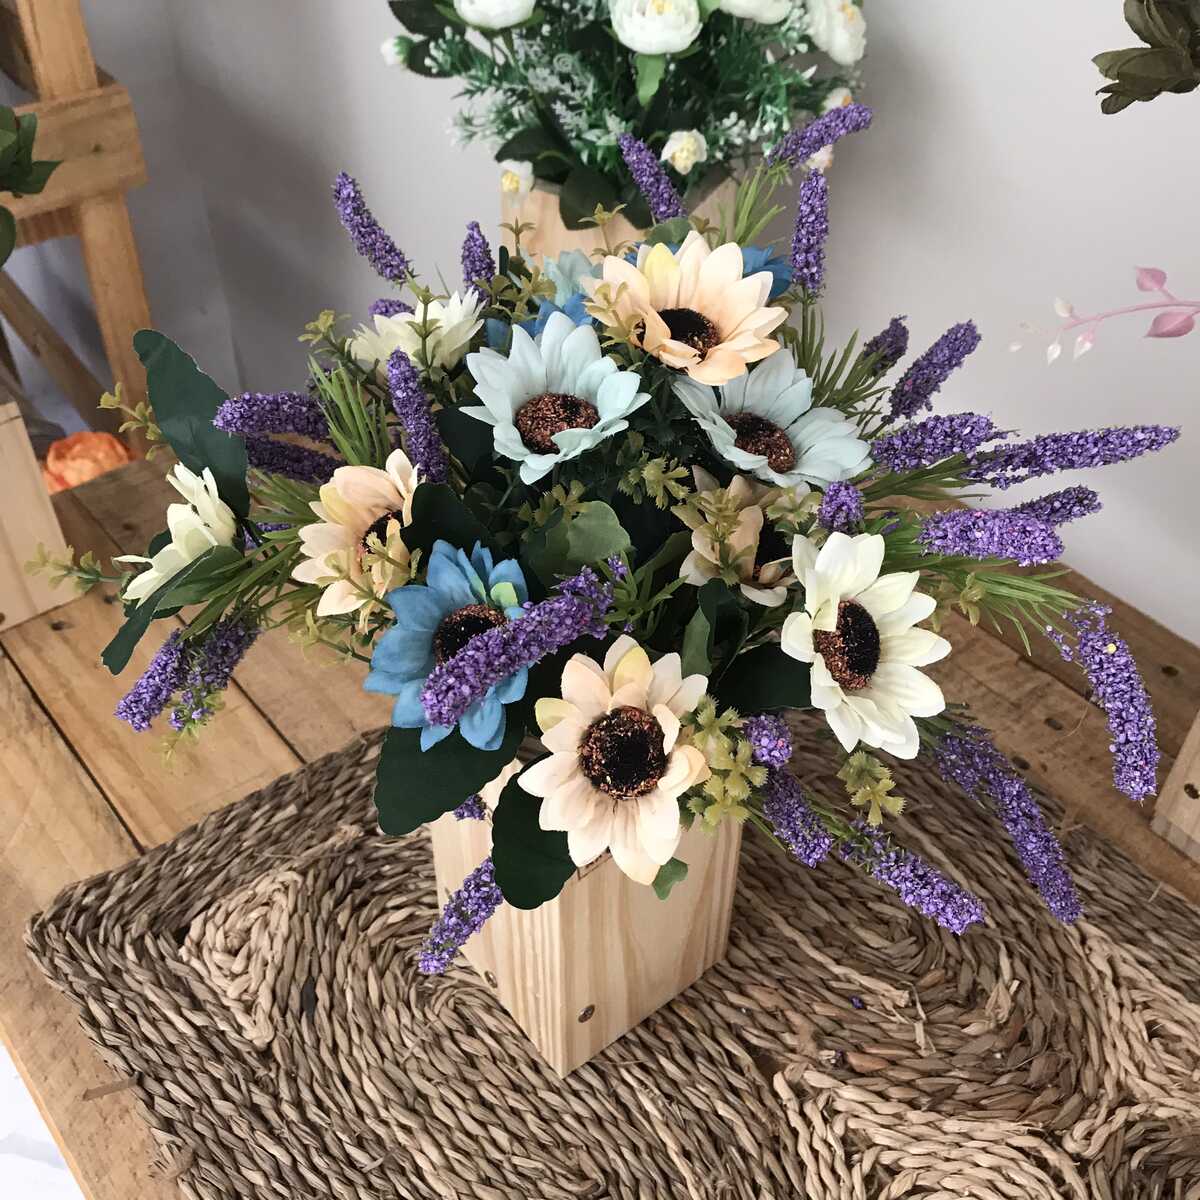 Bình Hoa Giả - Hoa Cúc Nhỏ Và Hoa Lavender - Hoa Vải Cao Cấp - Hoa Đẹp Để Bàn